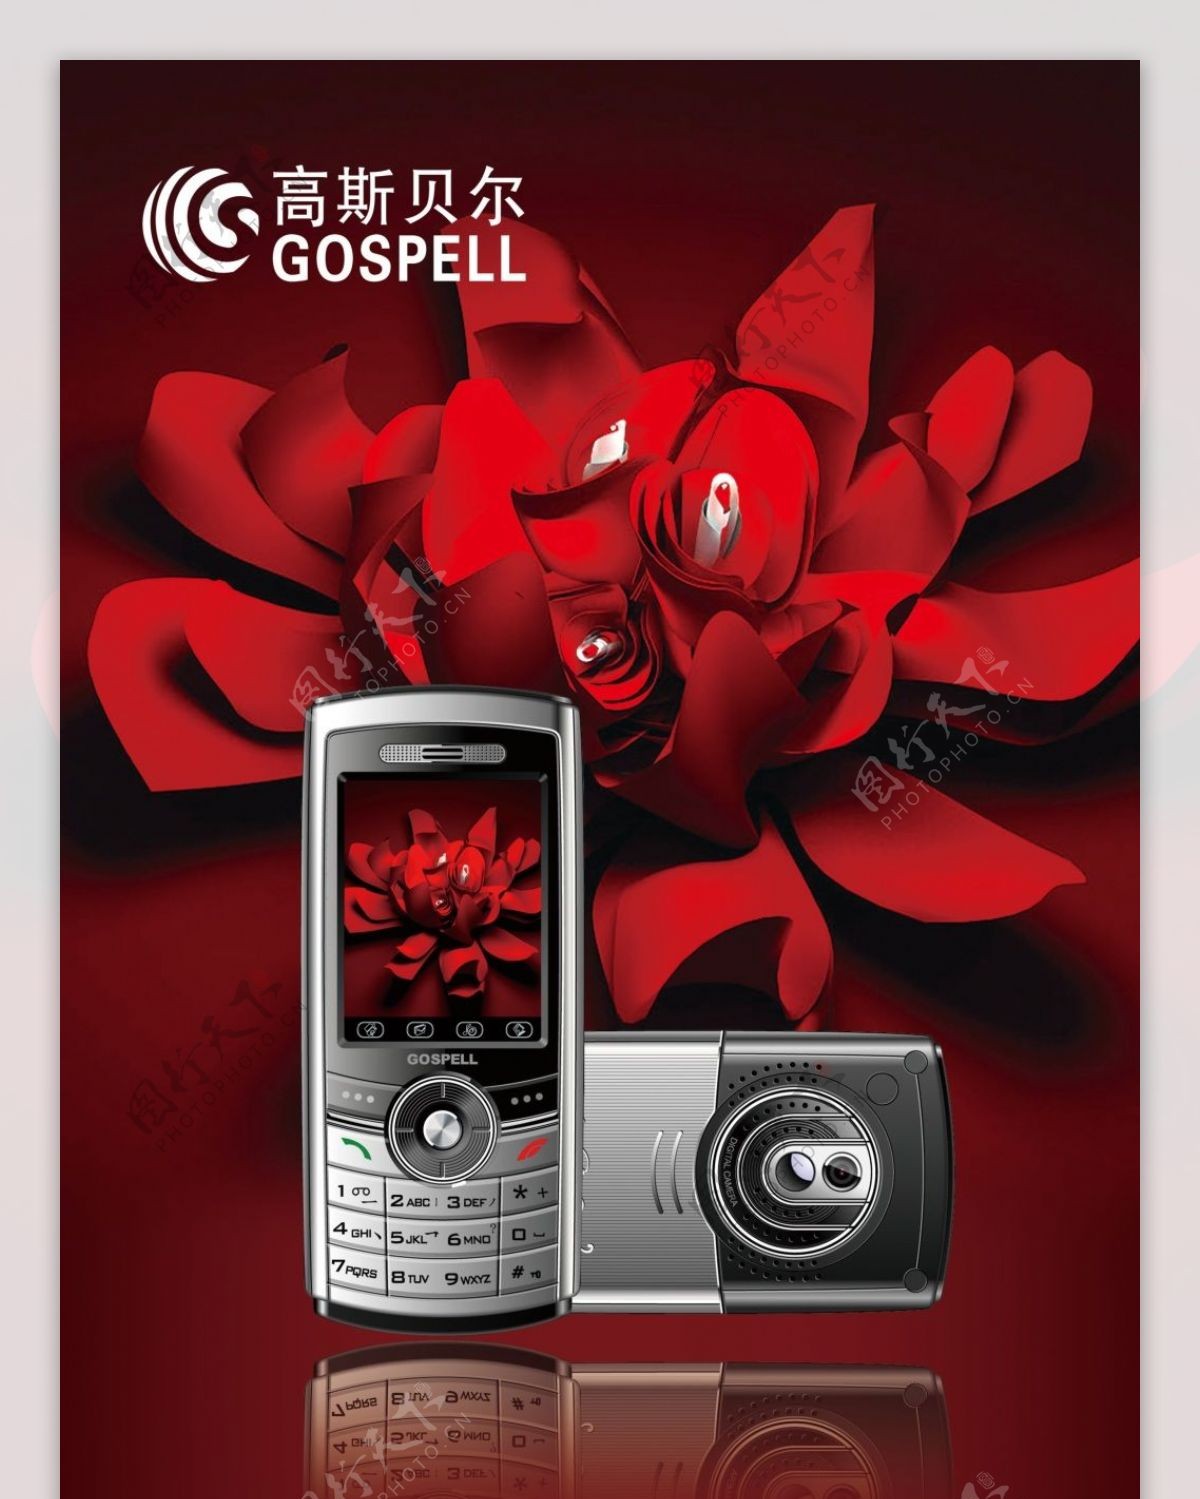 高斯贝尔红色手机广告设计素材海报